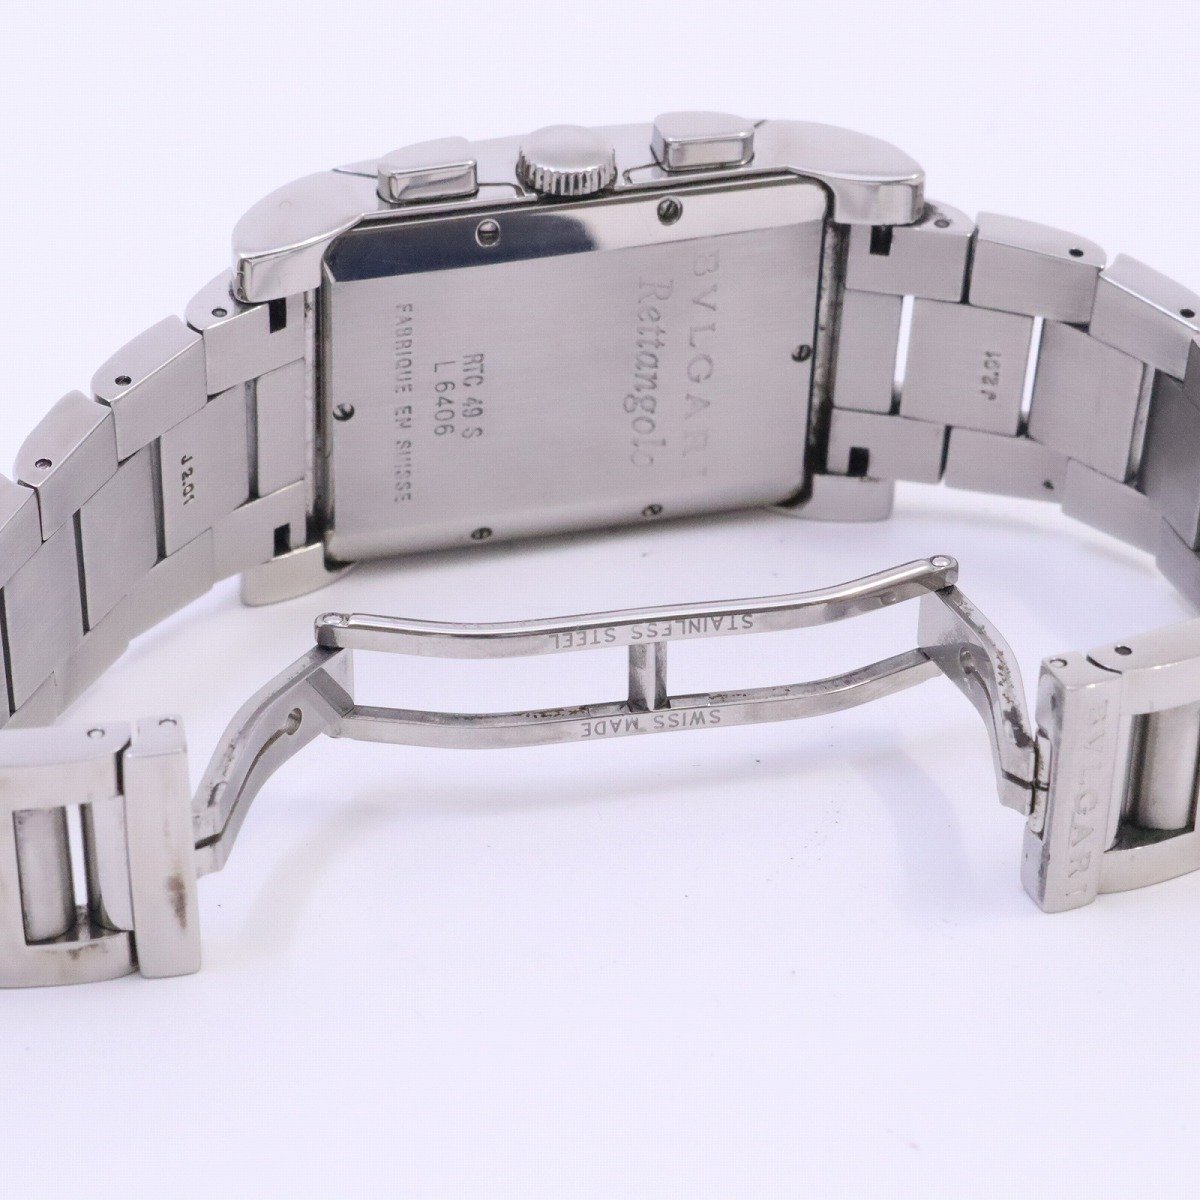 ブルガリ レッタンゴロ クロノグラフ クォーツ メンズ 腕時計 白文字盤 純正SSベルト RTC49S【いおき質店】の画像6